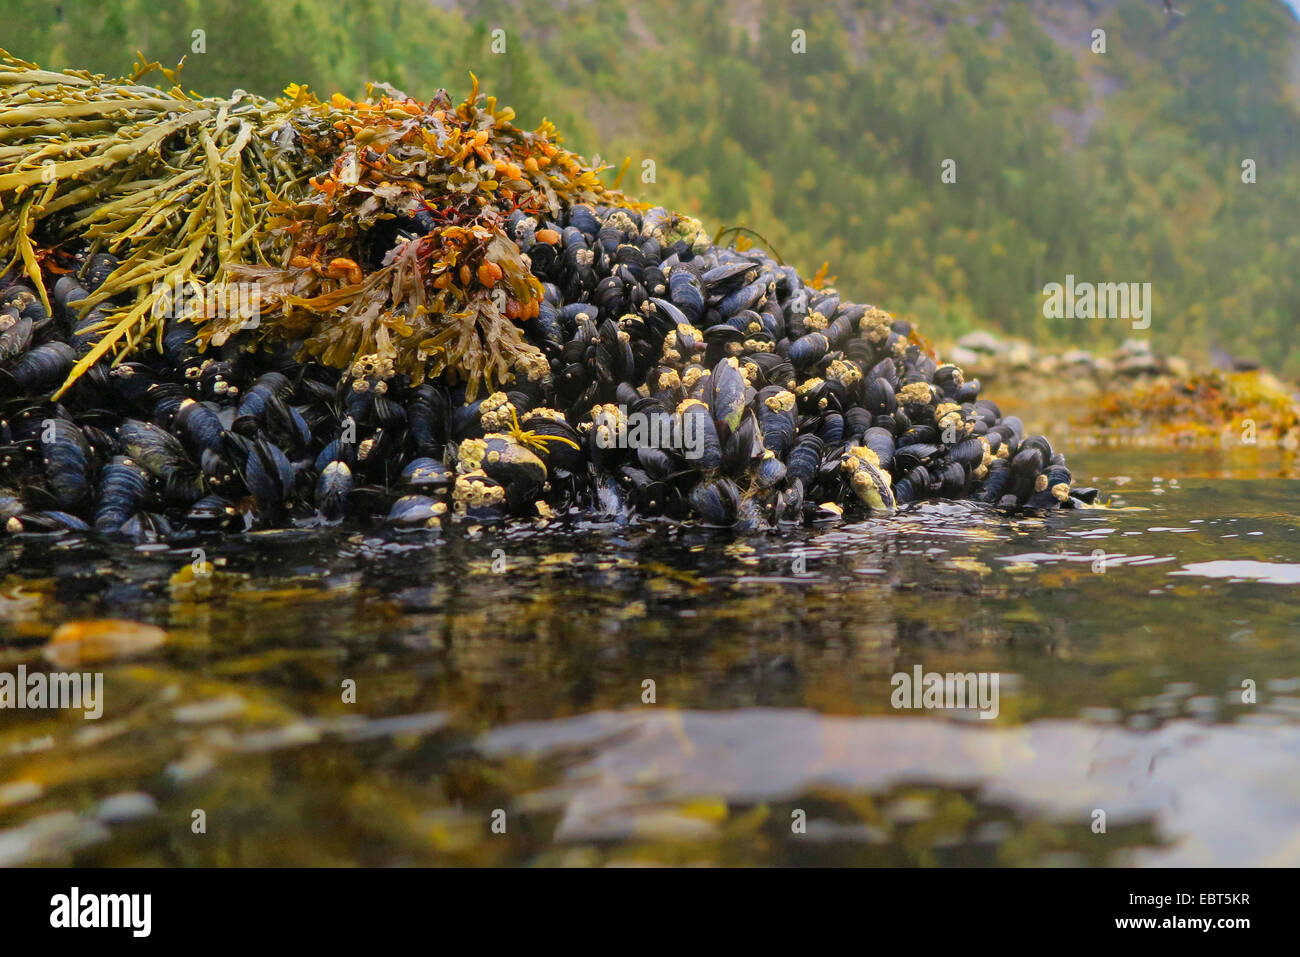 Les moules (Mytiloidea), colonie de moules à reflux avec rack de la vessie, de la Norvège, Nordland Banque D'Images